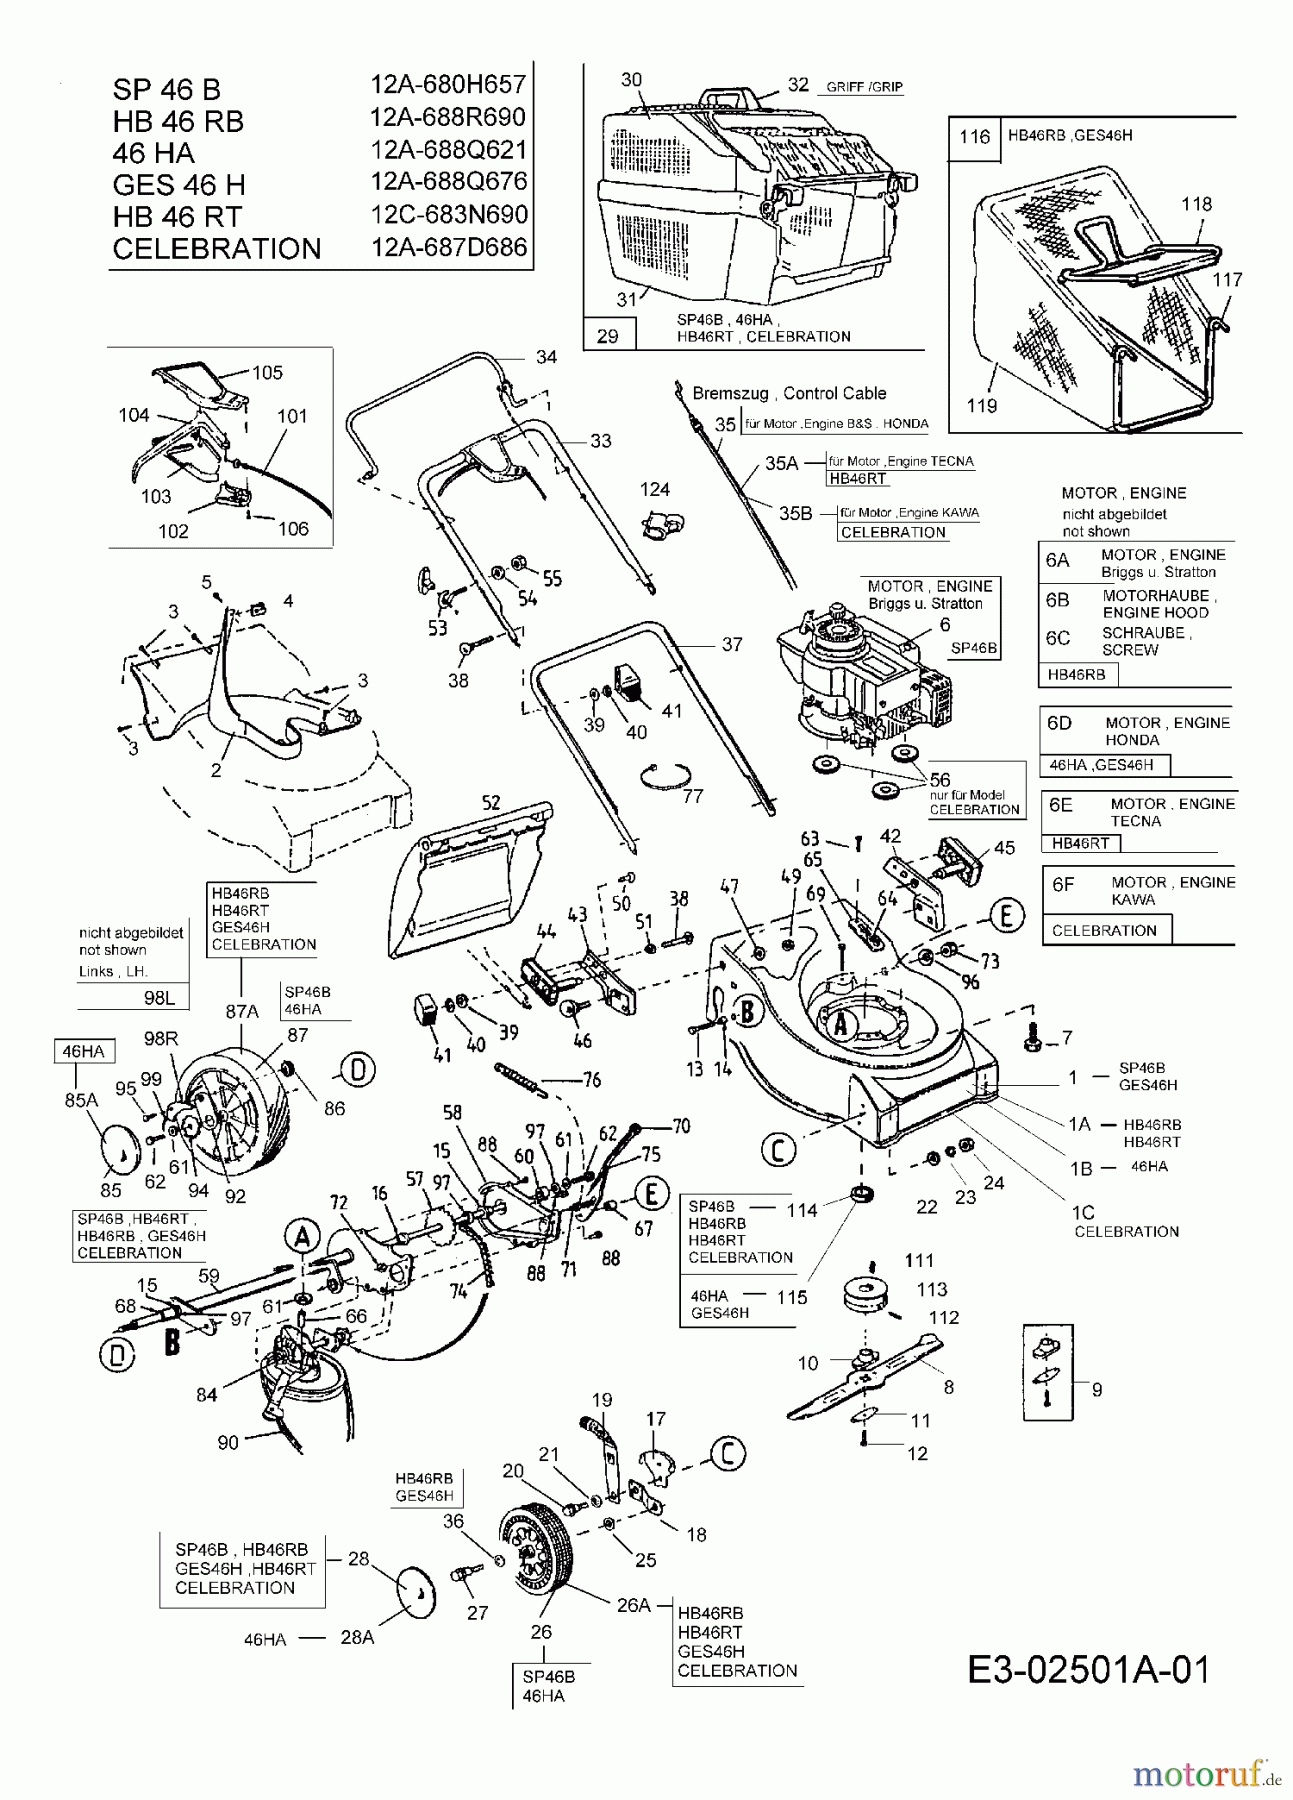  Hanseatic Motormäher mit Antrieb 46 HA 12A-688Q621  (2005) Grundgerät